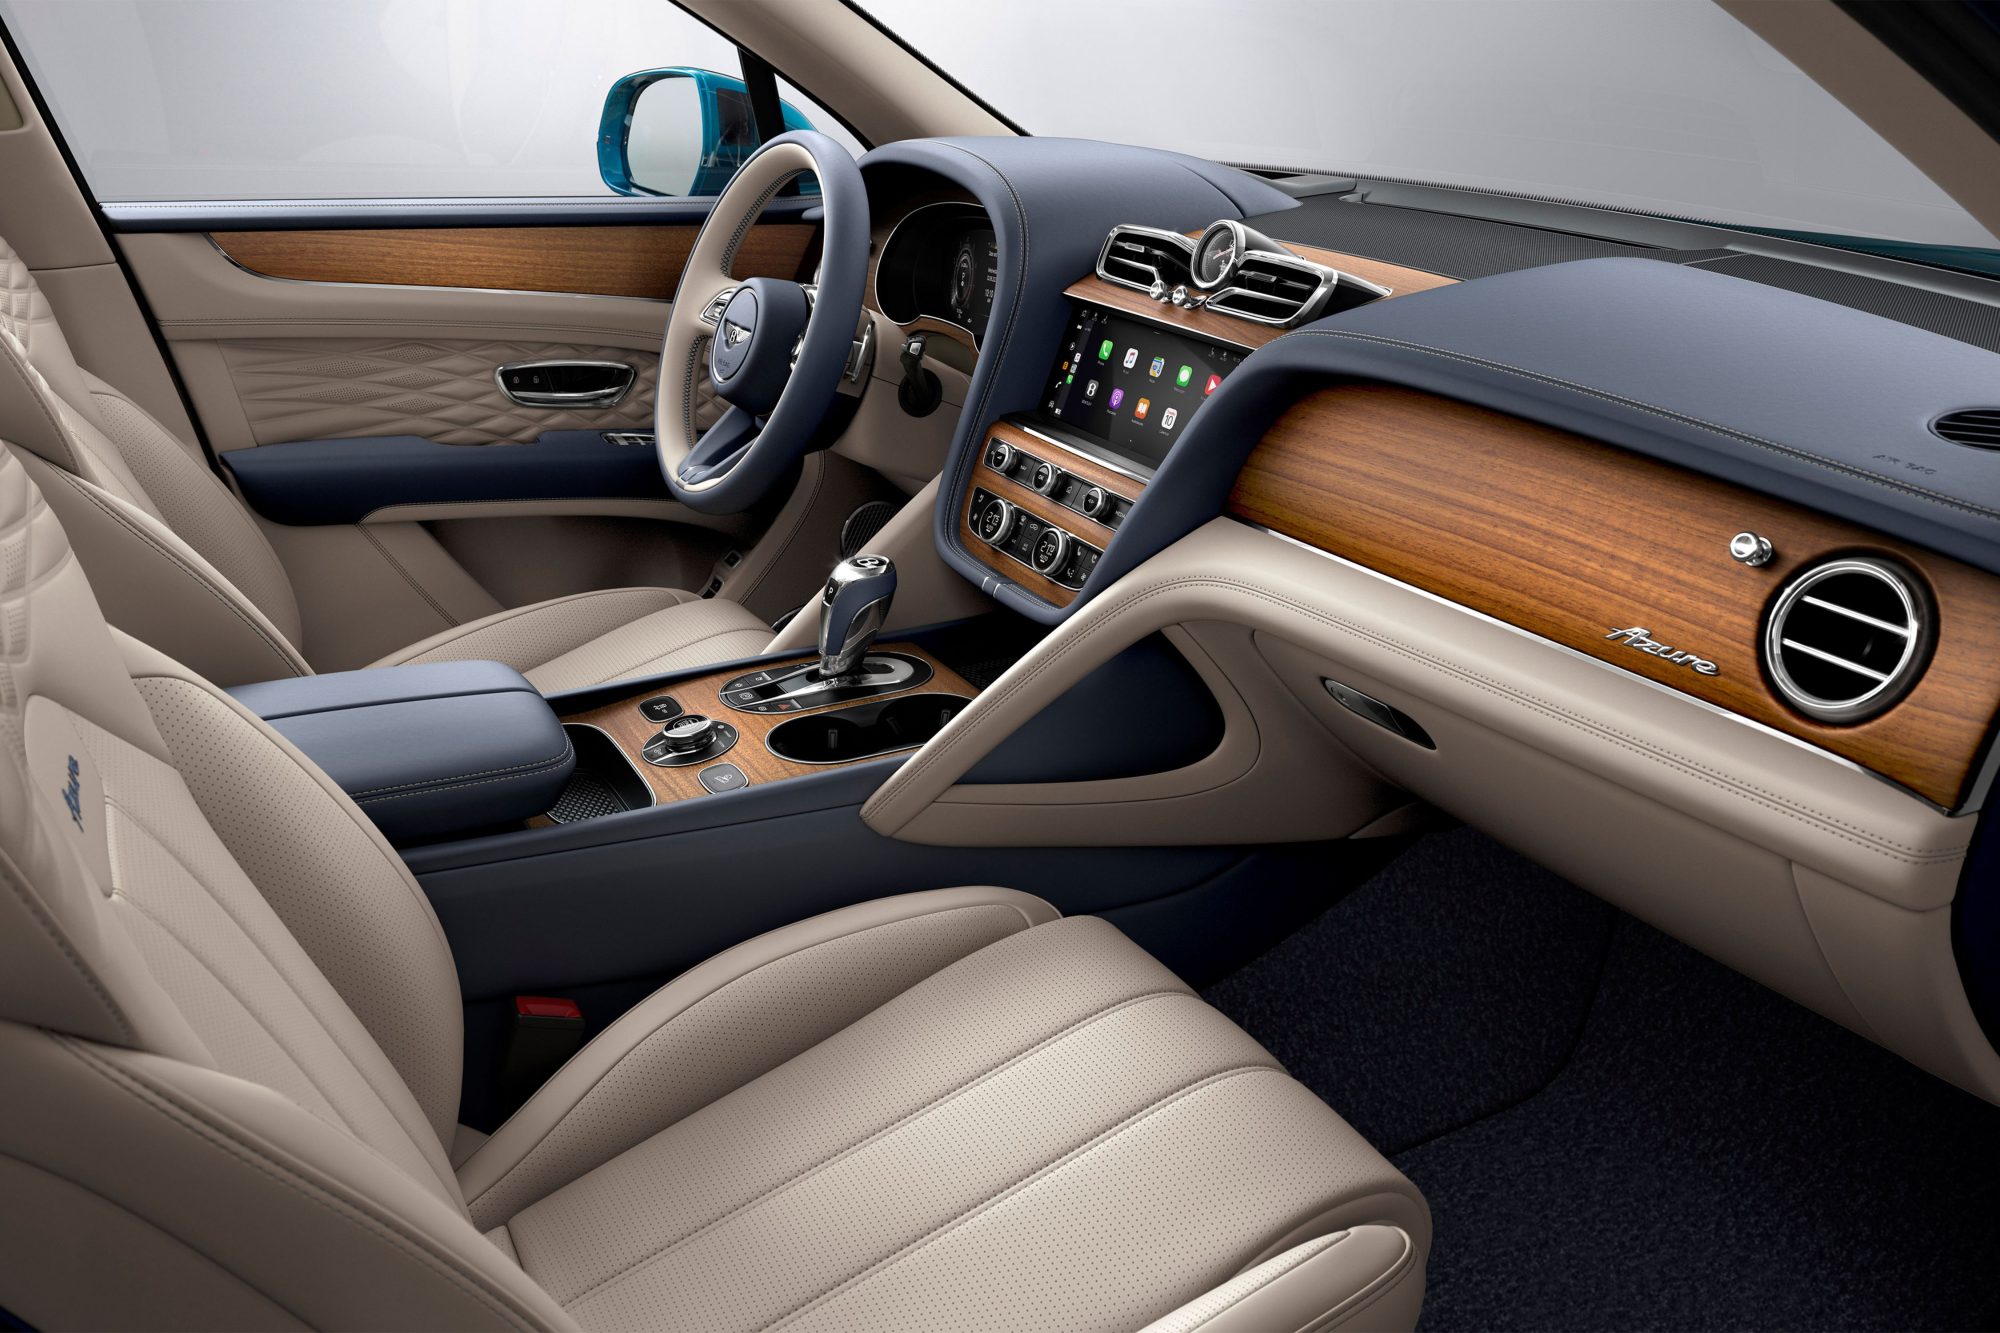 Bentley Motors brings new features across the Bentayga range